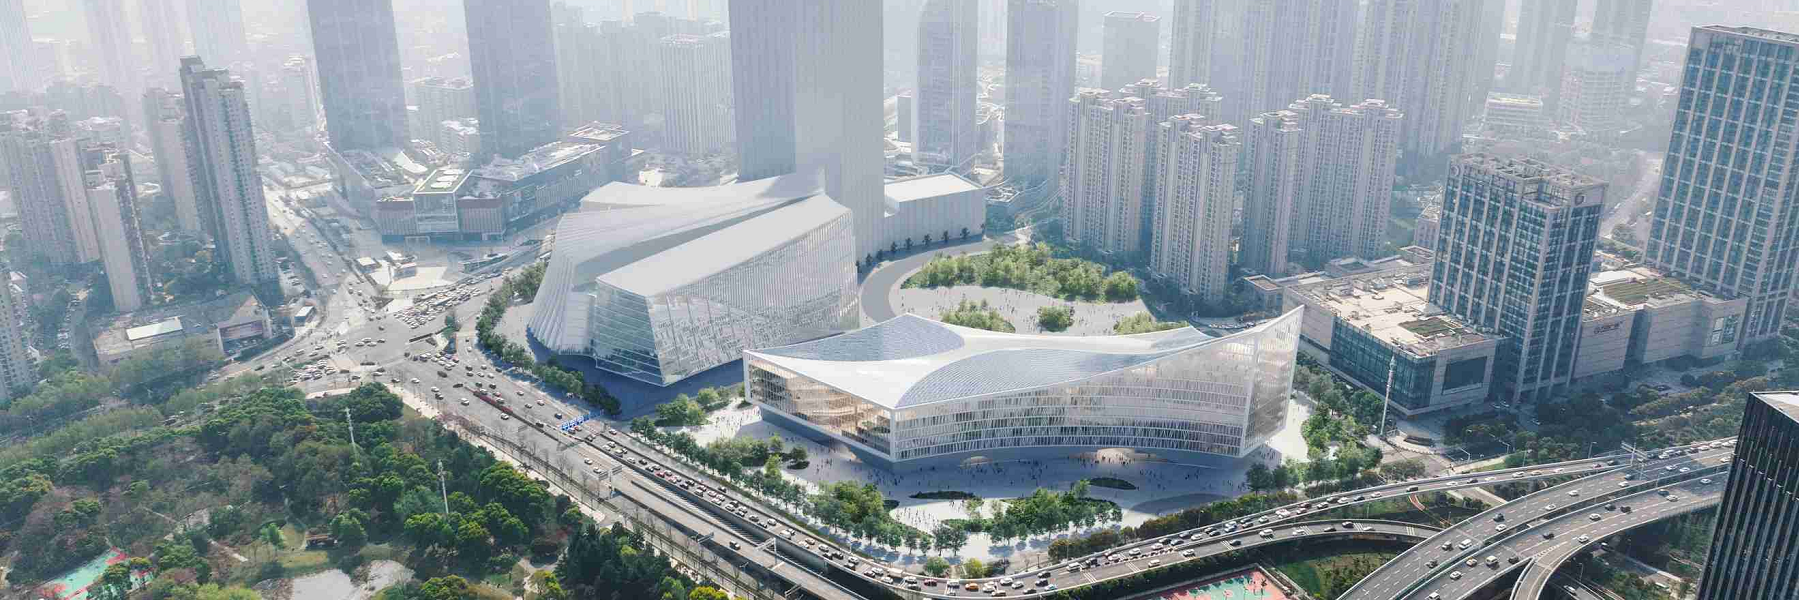 武汉图书馆新馆建设项目